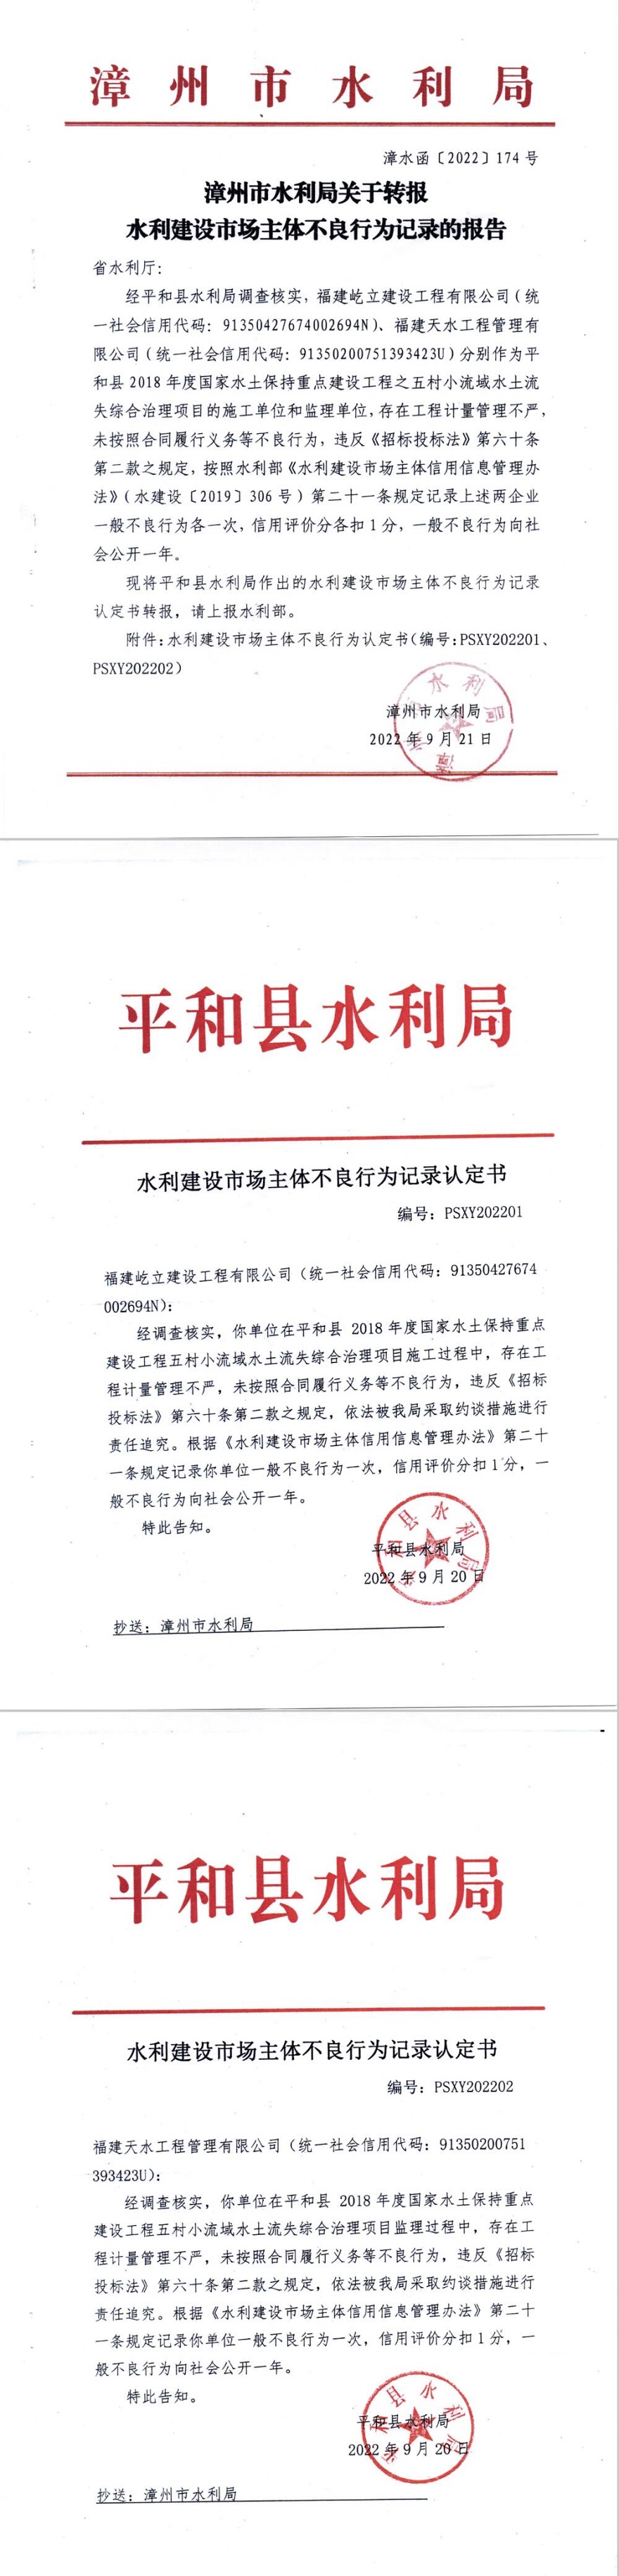 漳州市水利局关于转报水利建设市场主体不良行为记录的报告.jpg